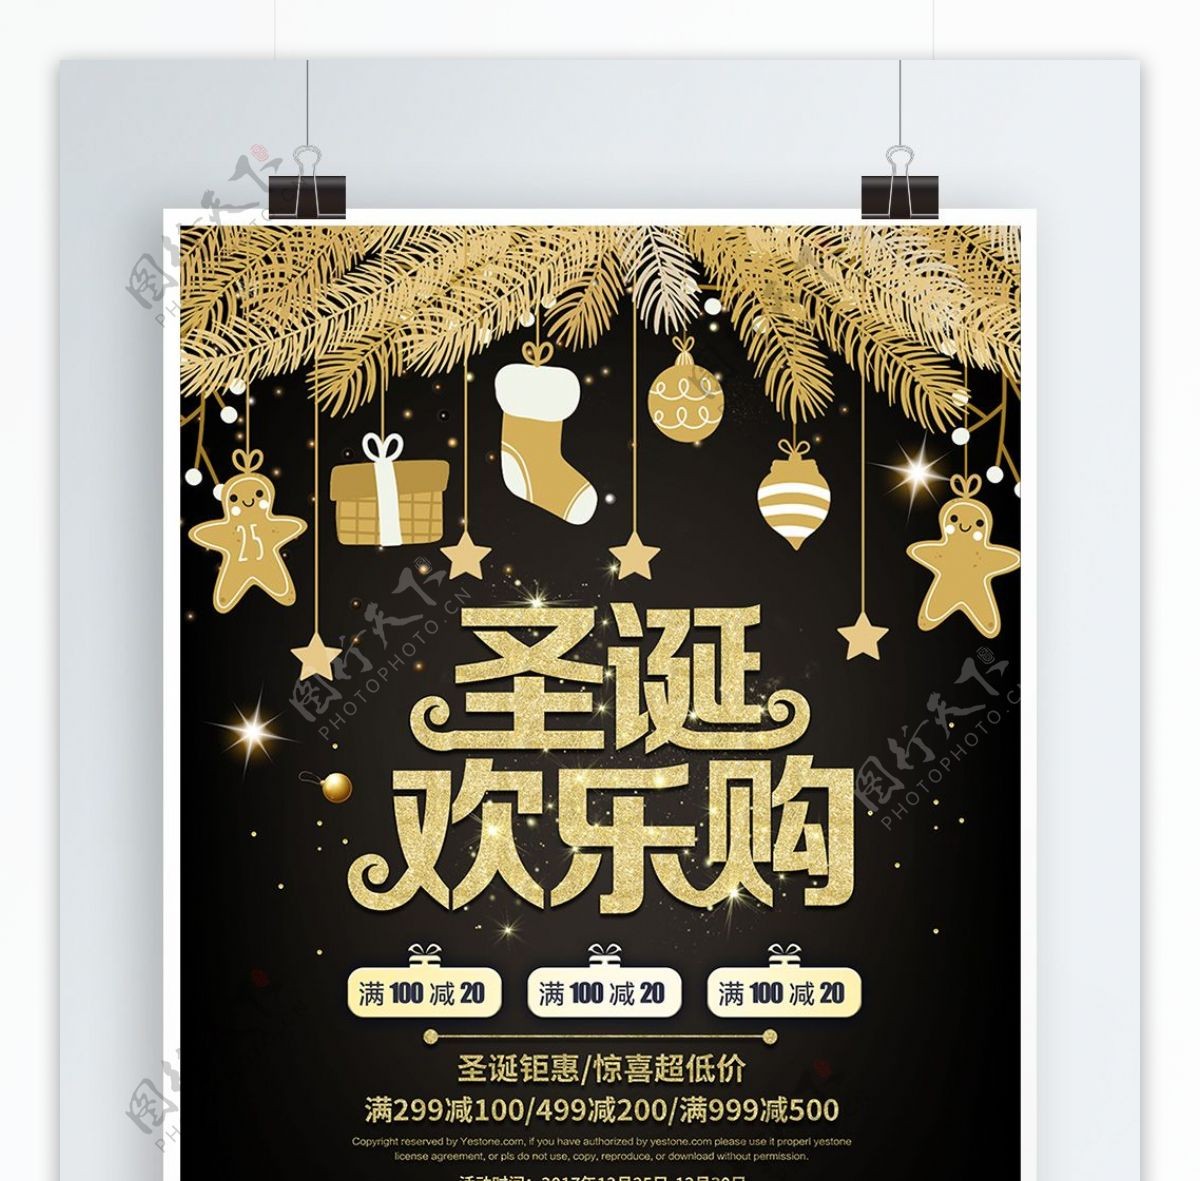 圣诞欢乐购圣诞节节日促销海报PSD模板